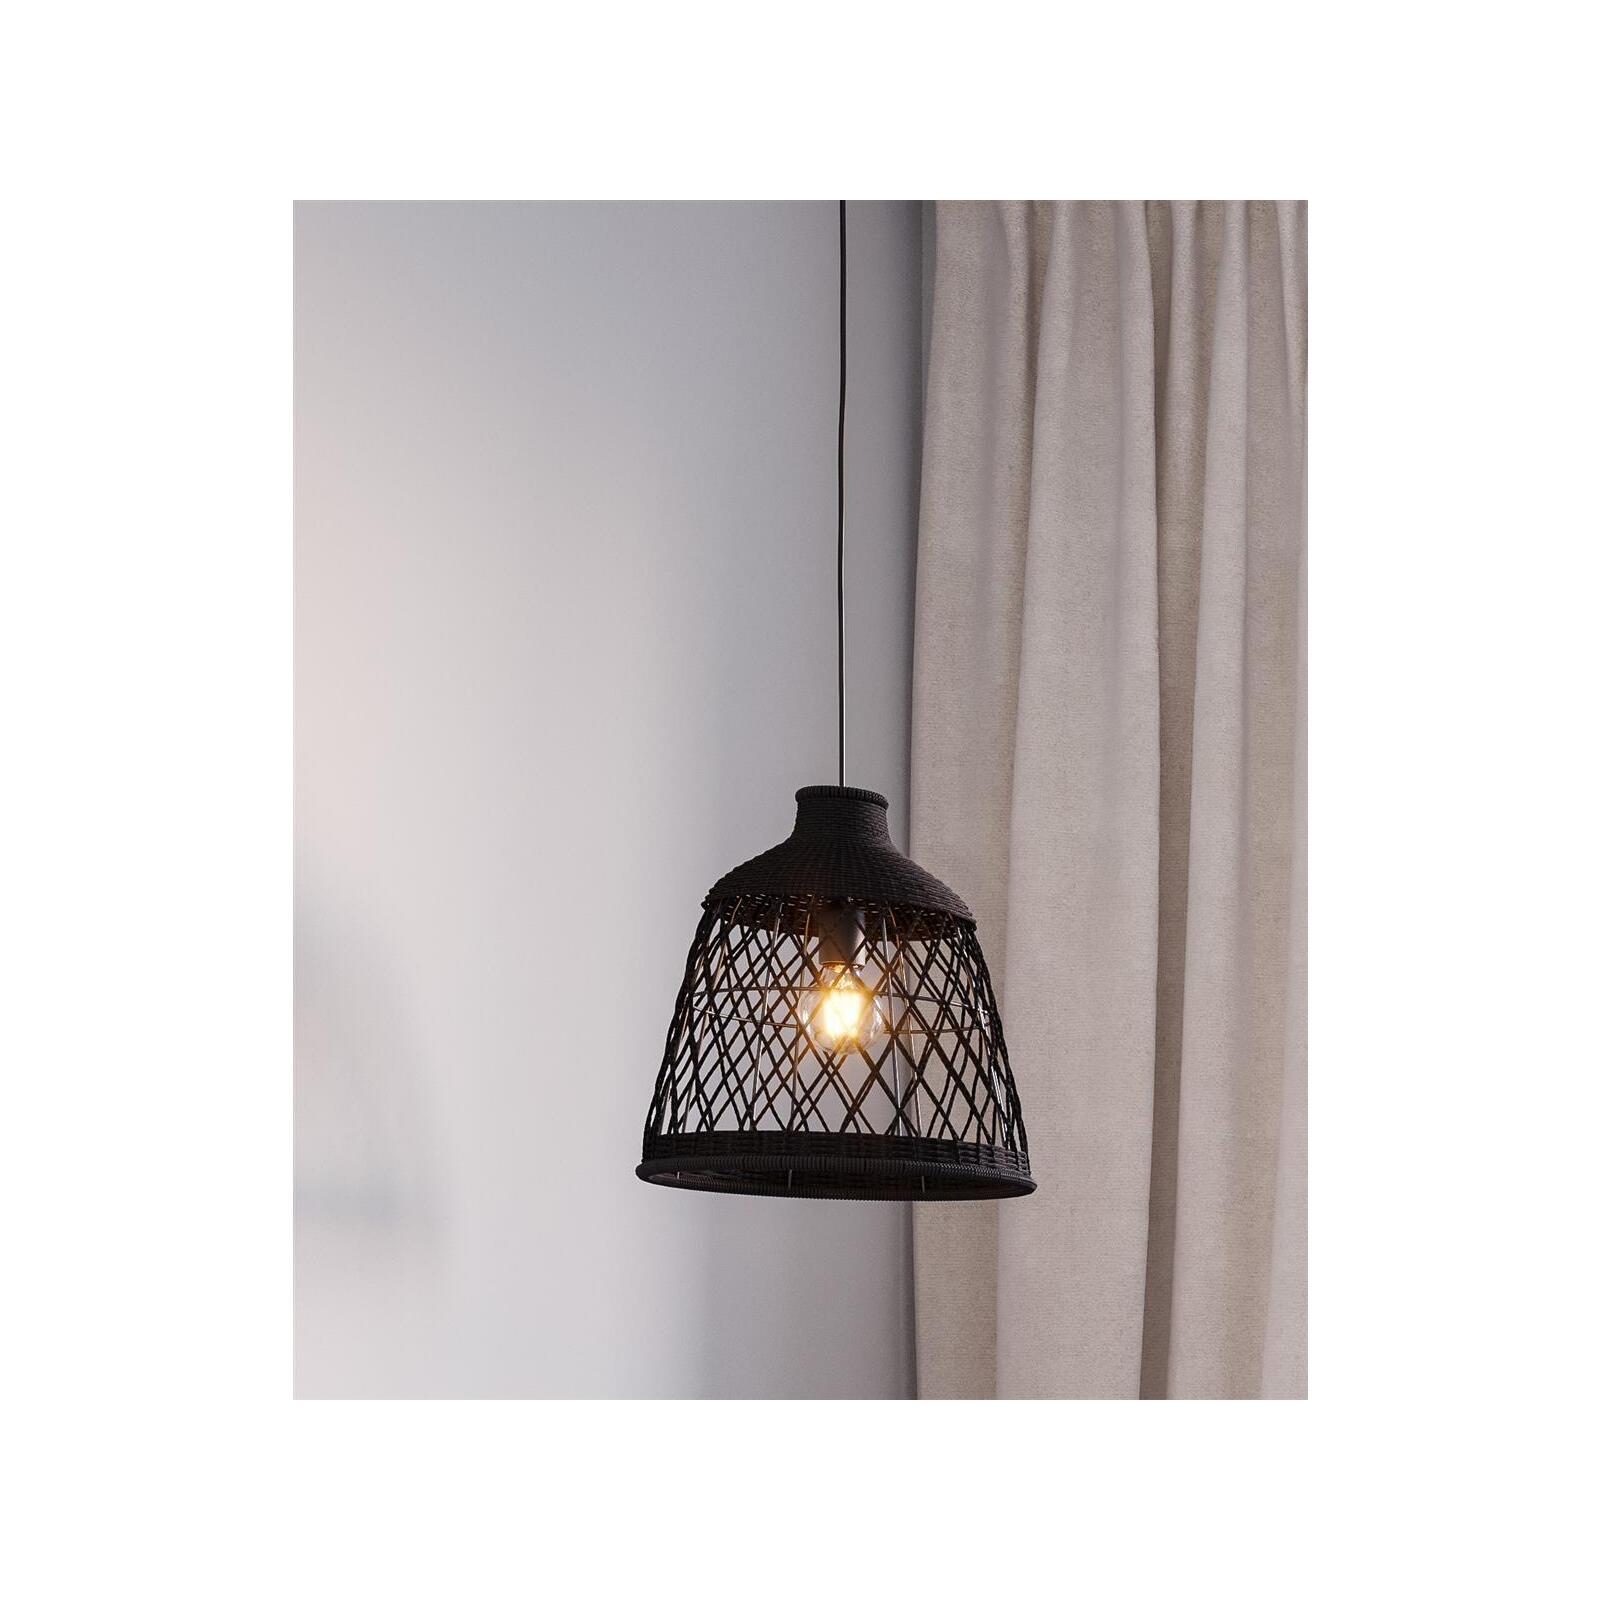 & Lampen - schwarz Lucena Ø34cm Leuchten E27 natürliche Rydens Onlineshop By Pendelleuchte